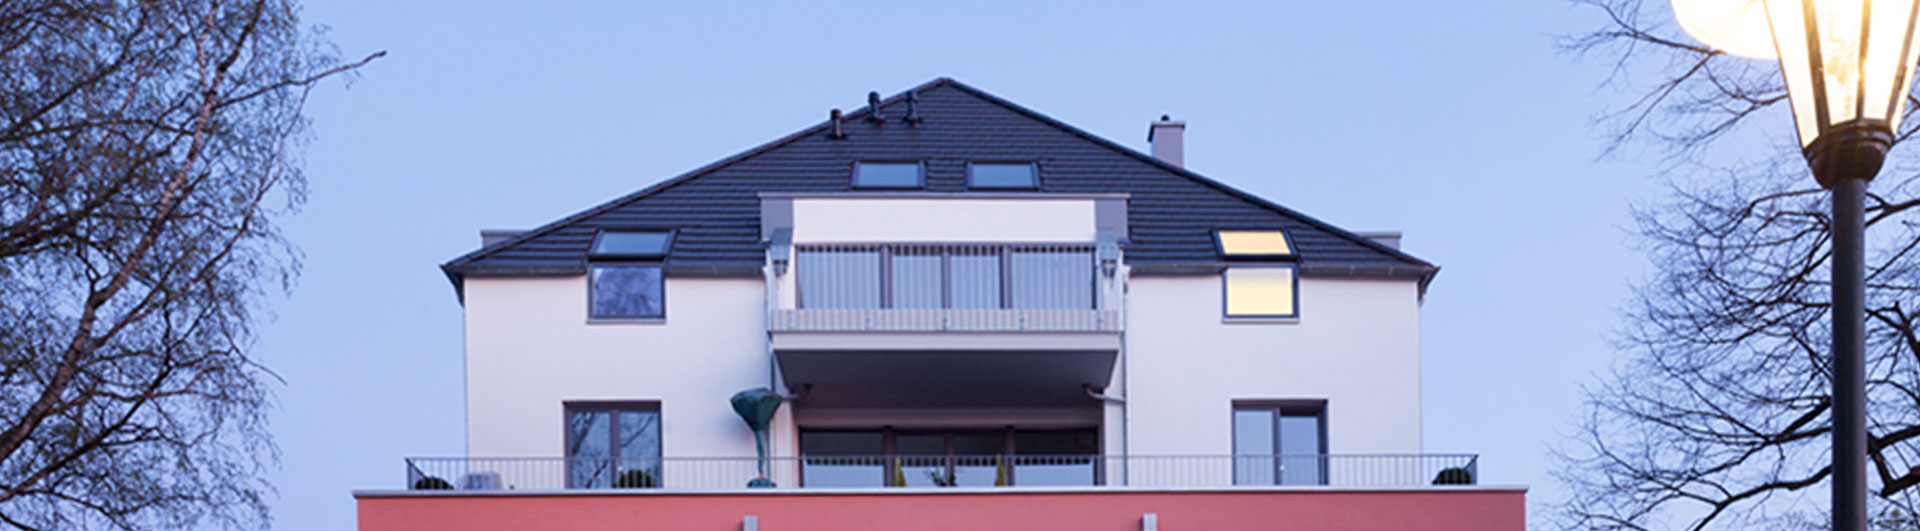 Bild rotes Haus, Refernzobjekt  Winands Invest, Rodenkirchen Köln 